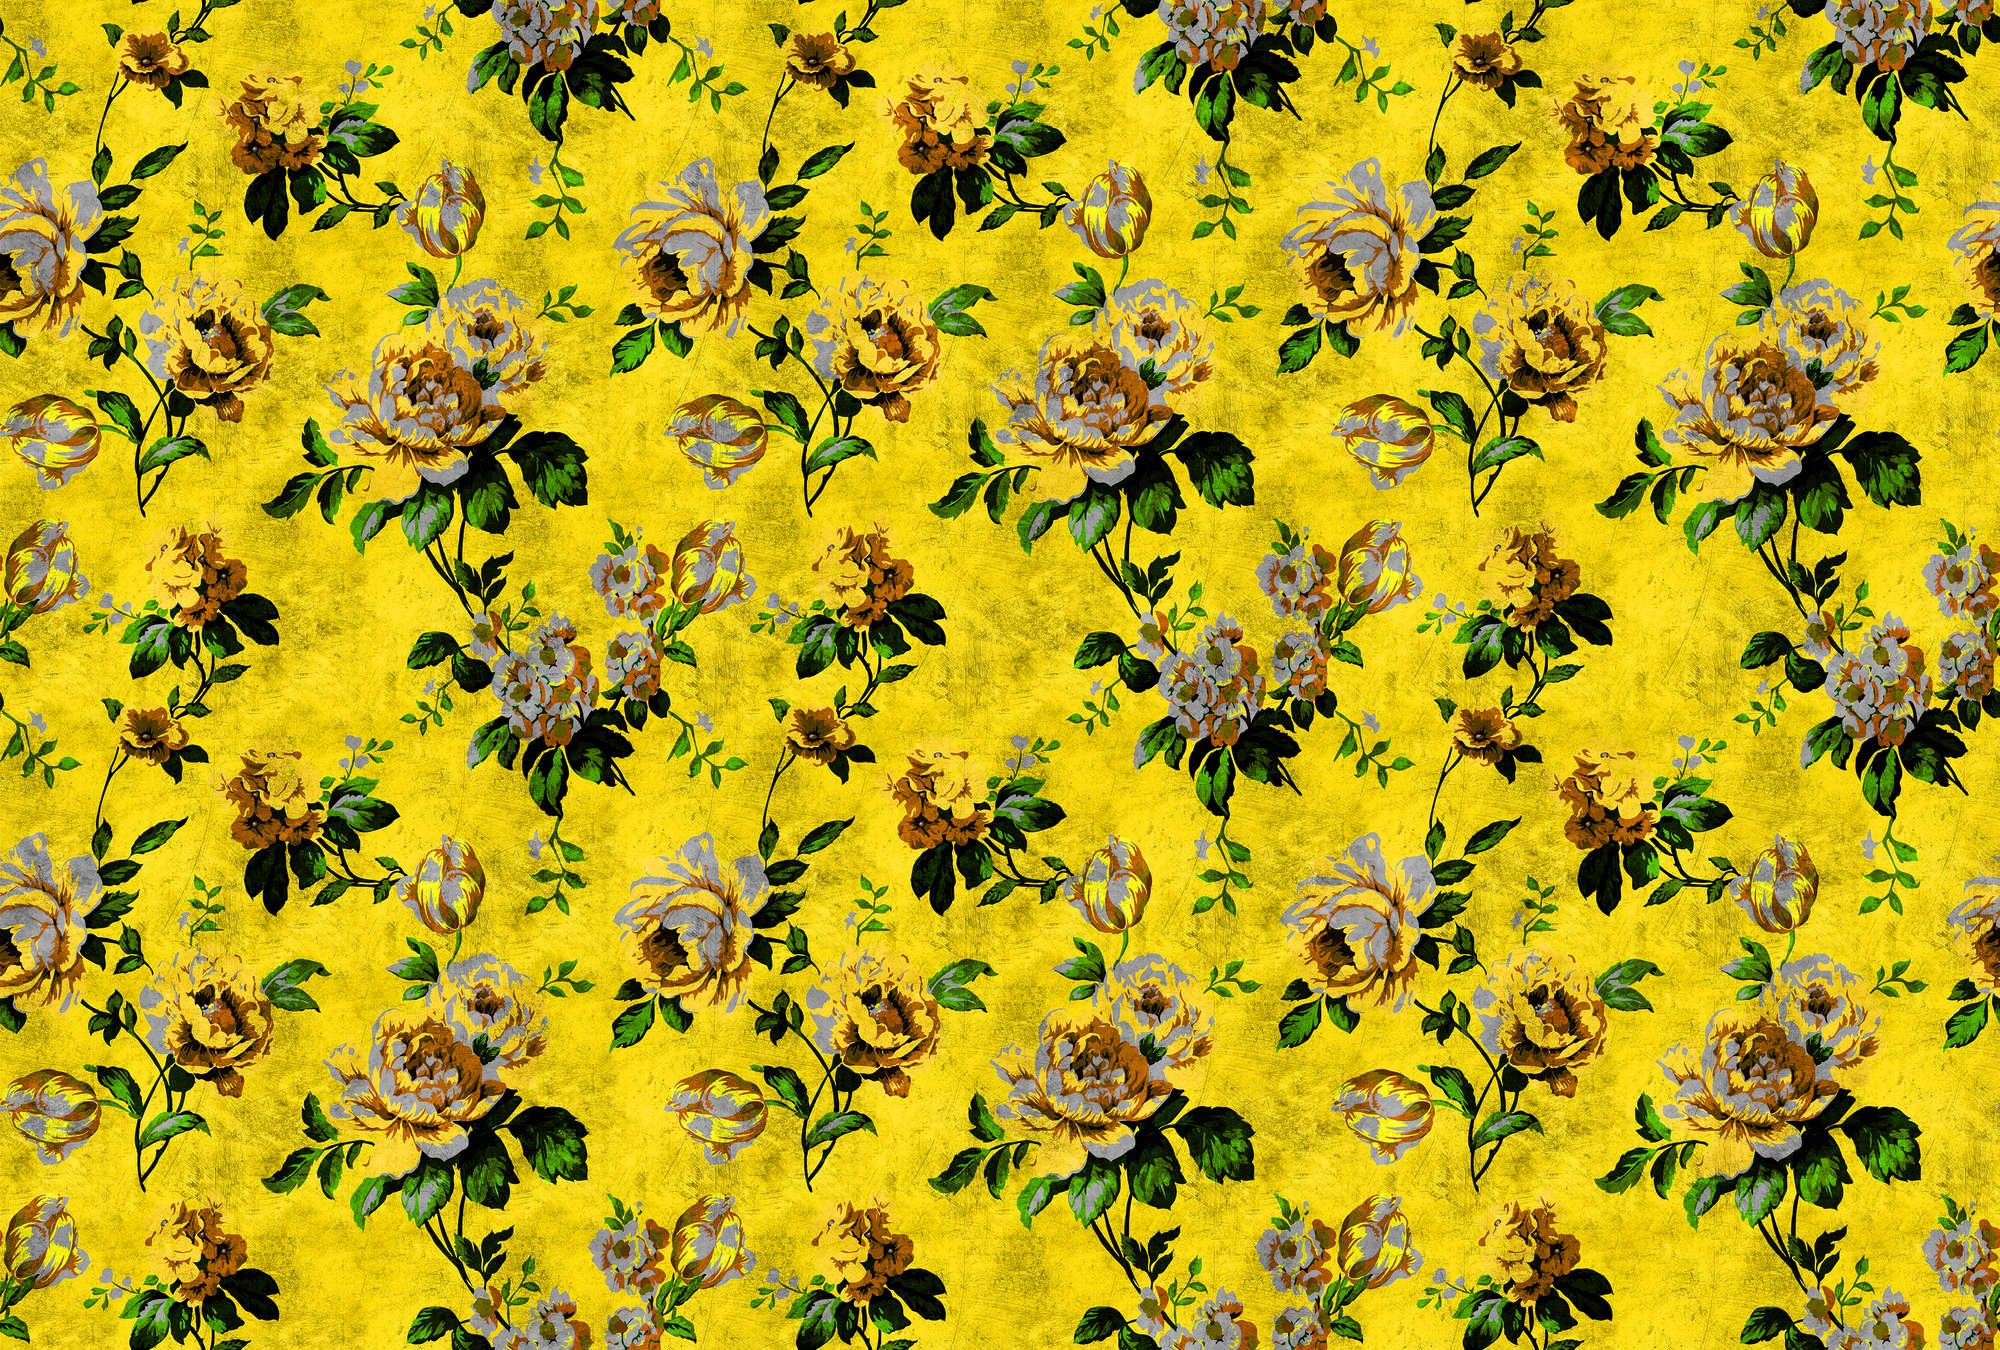             Rosas silvestres 5 - Papel pintado fotográfico Rosas en estructura rayada en aspecto retro, amarillo - amarillo, verde | nácar liso polar
        